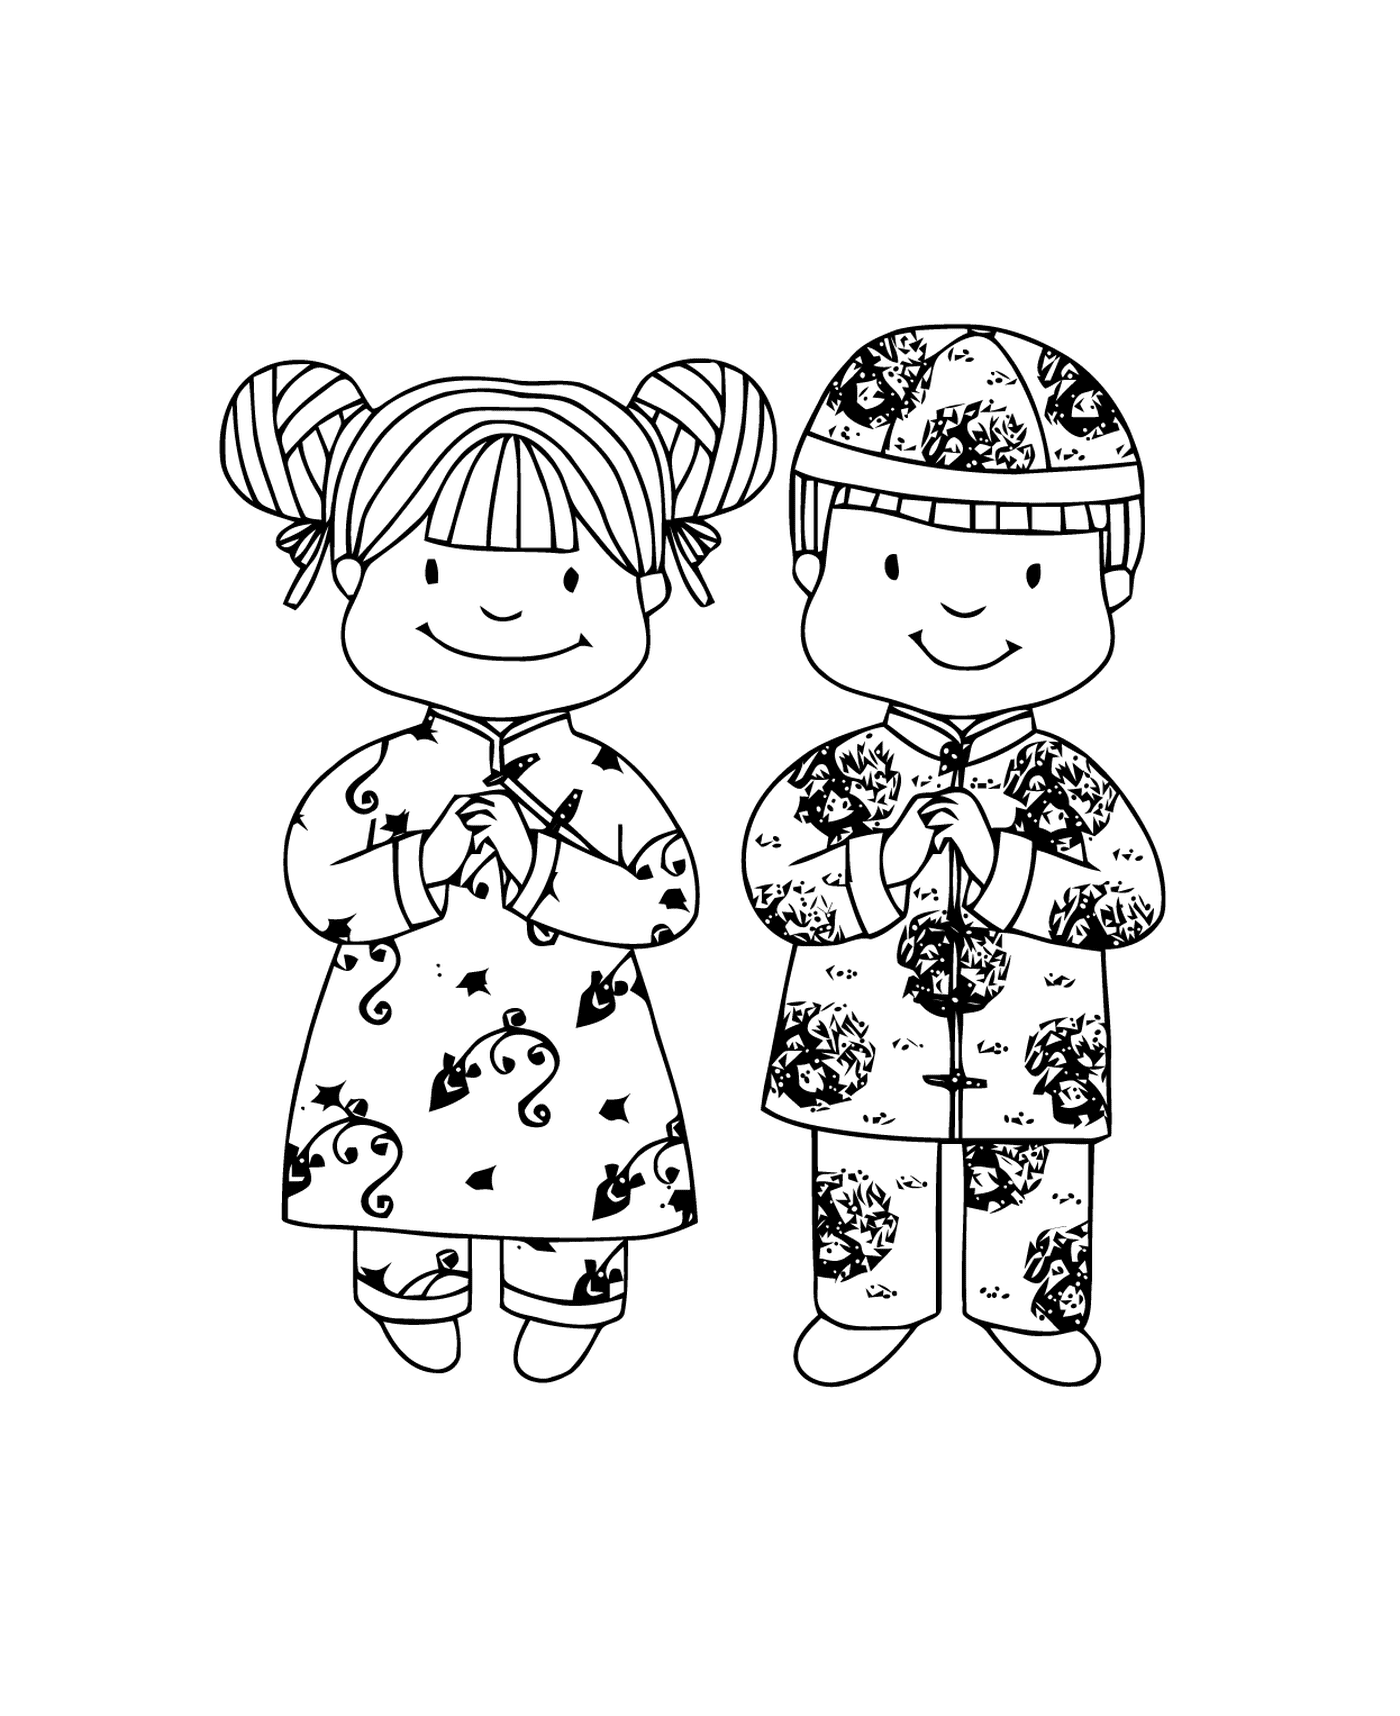  الفتاة والصبي في اللباس التقليدي للسنة الصينية الجديدة 